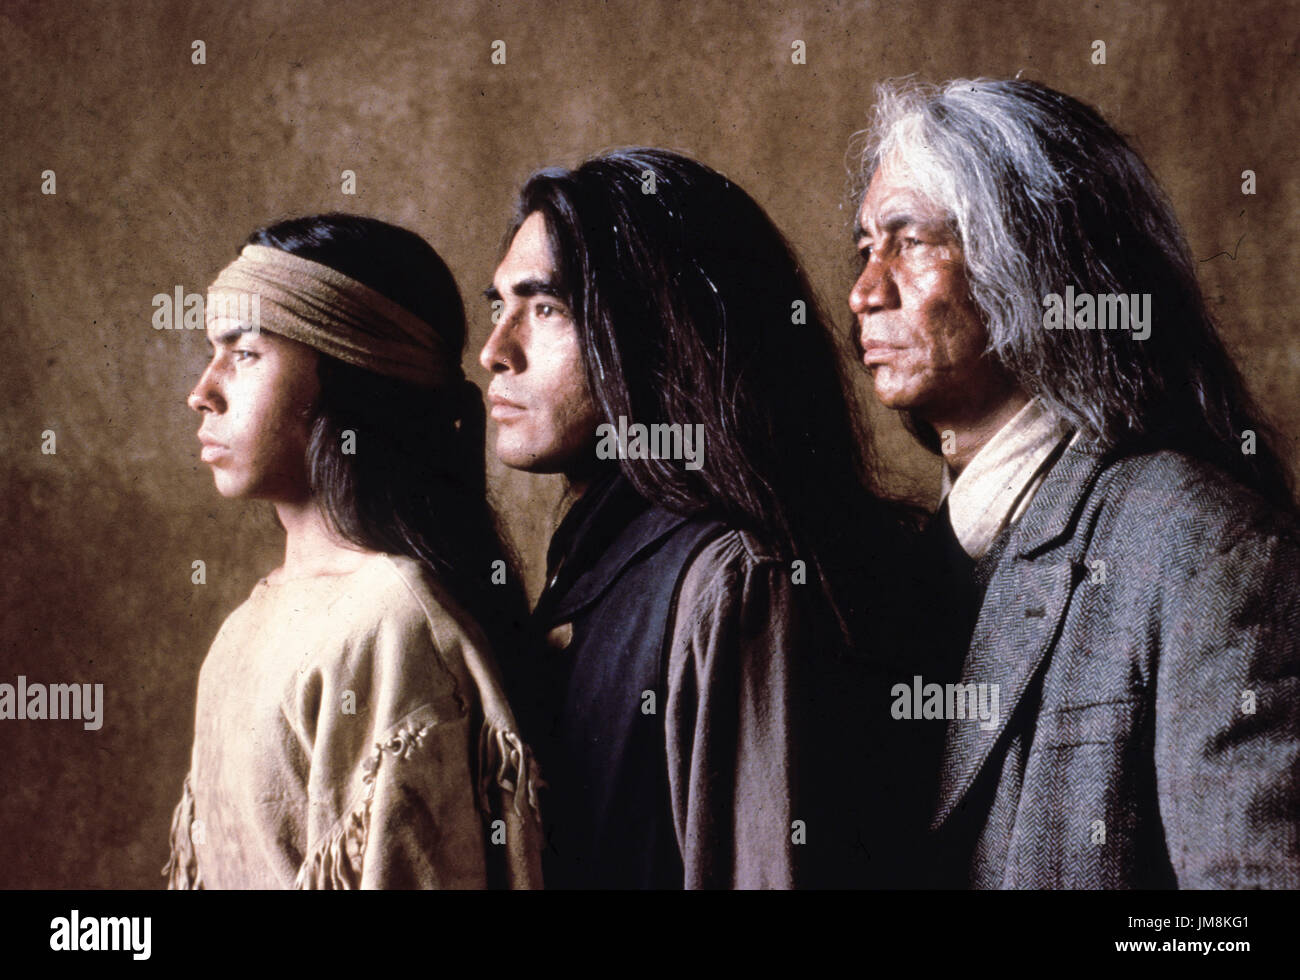 Ryan nero, Joseph runningfox, jimmy herman, geronimo una leggenda americana, 1993 Foto Stock